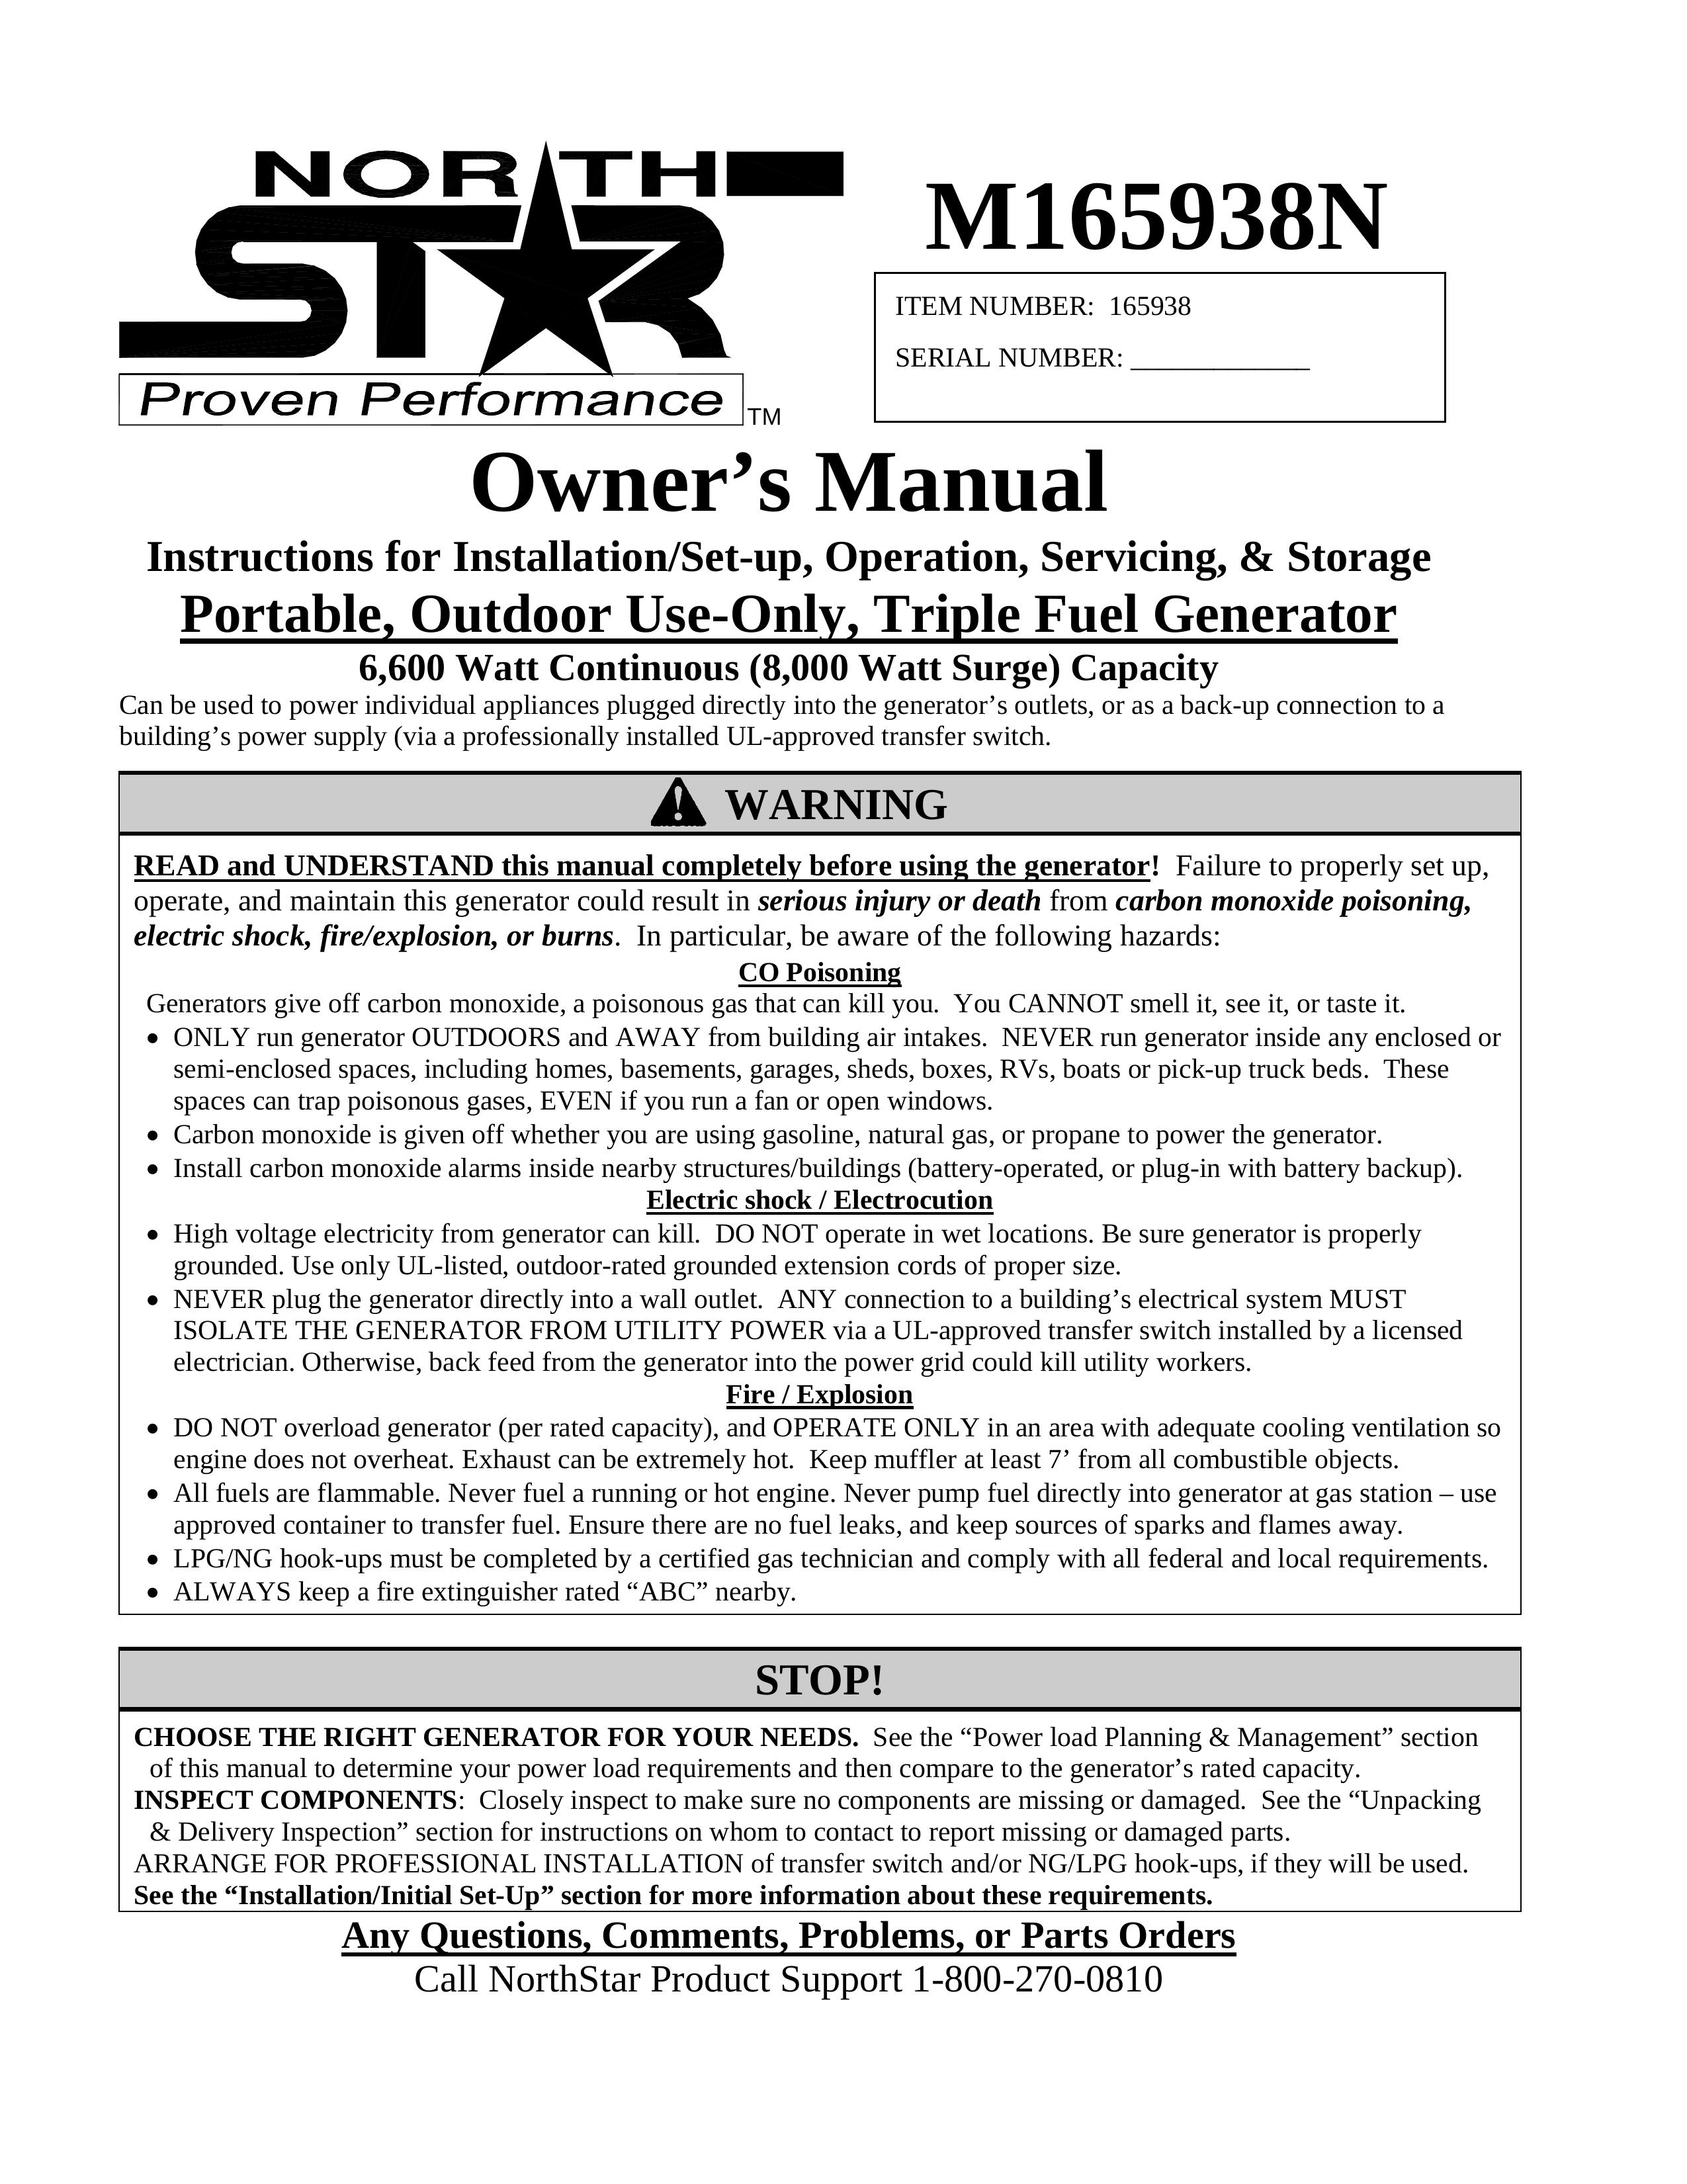 North Star M165938N Portable Generator User Manual